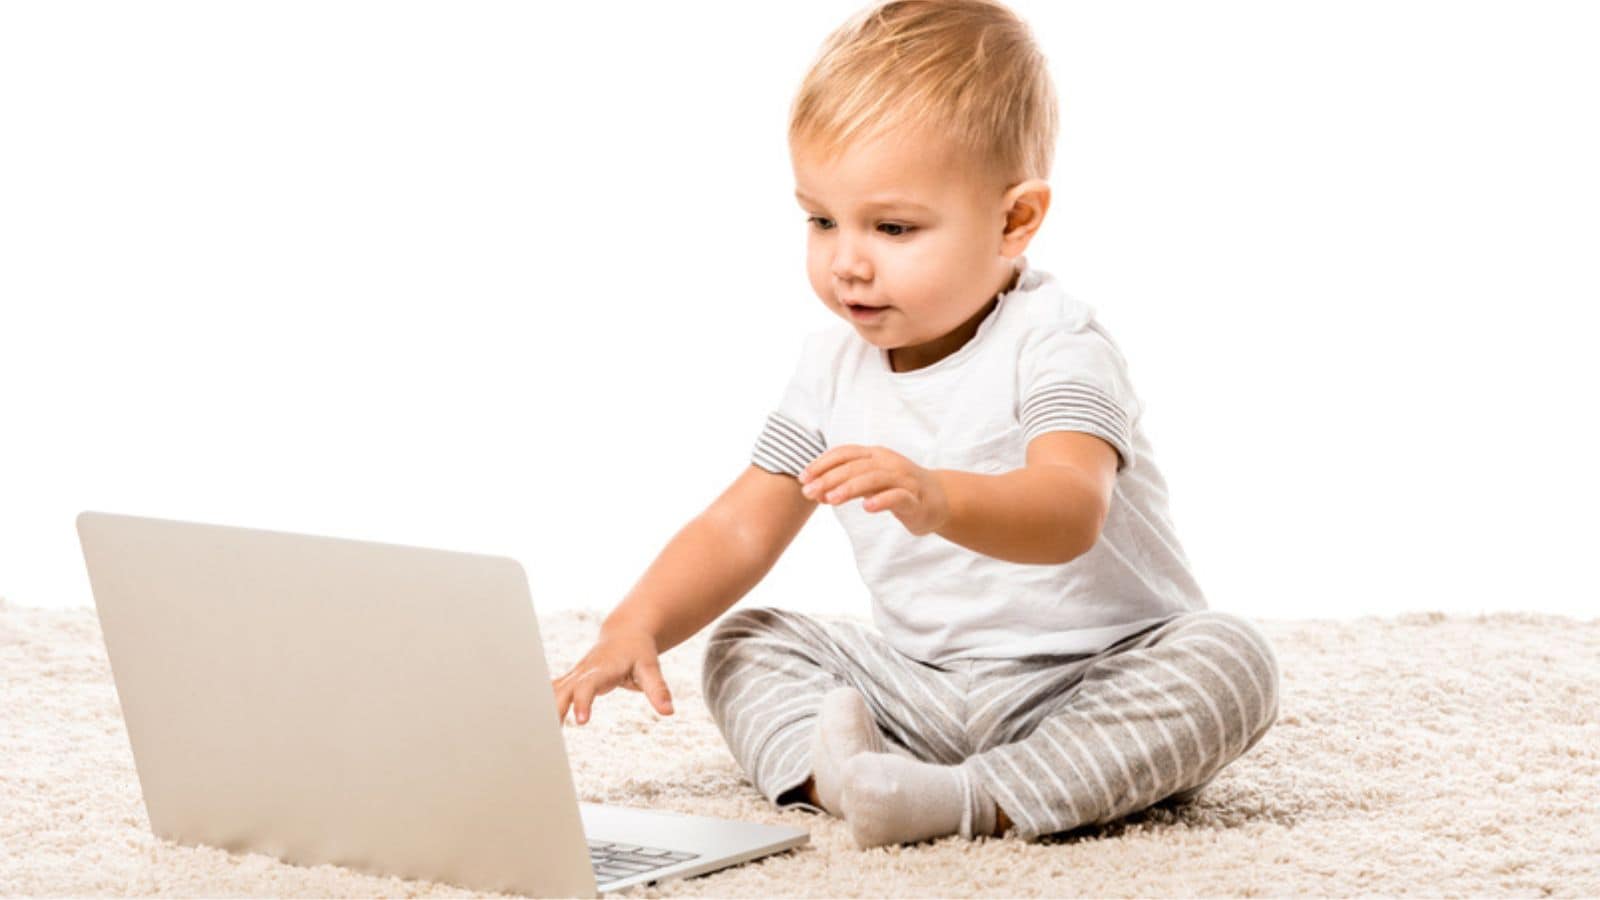 Smiling toddler boy sitting with laptop on carpet